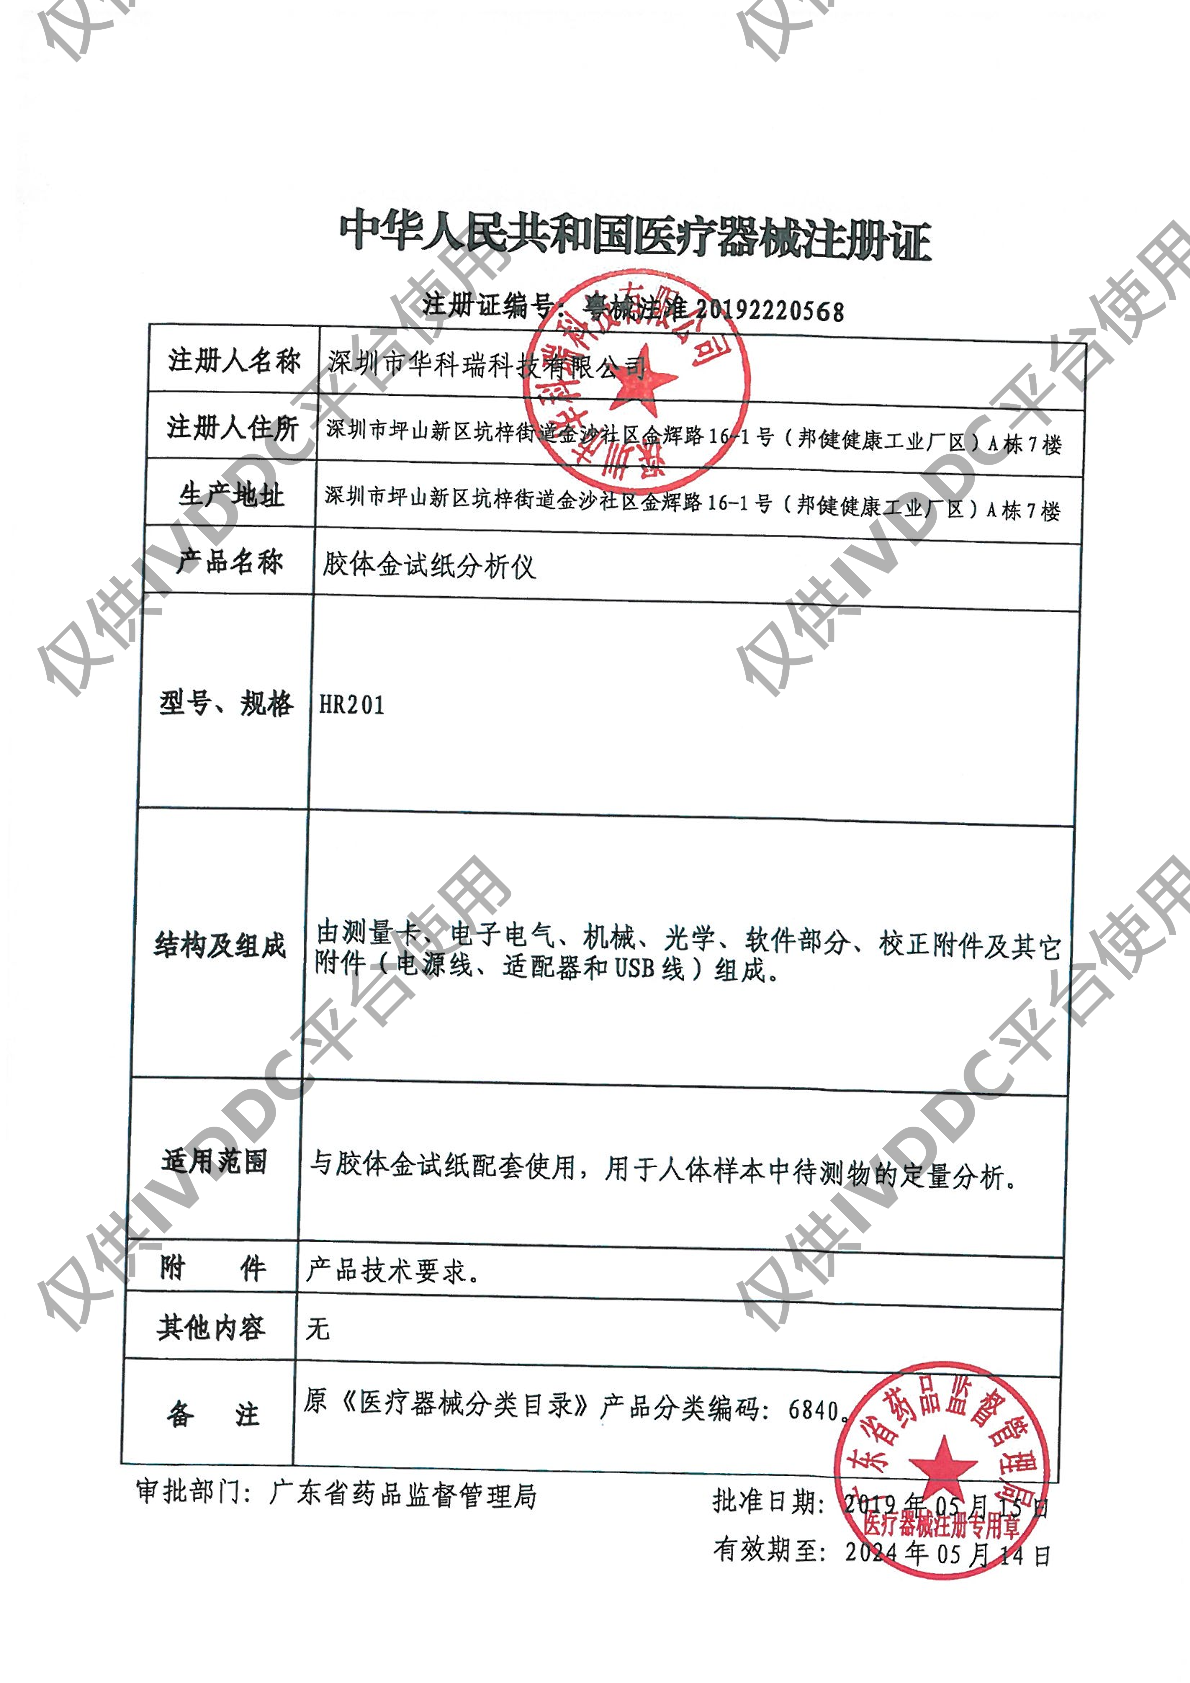 【深圳华科瑞】 胶体金试纸分析仪 HR201注册证